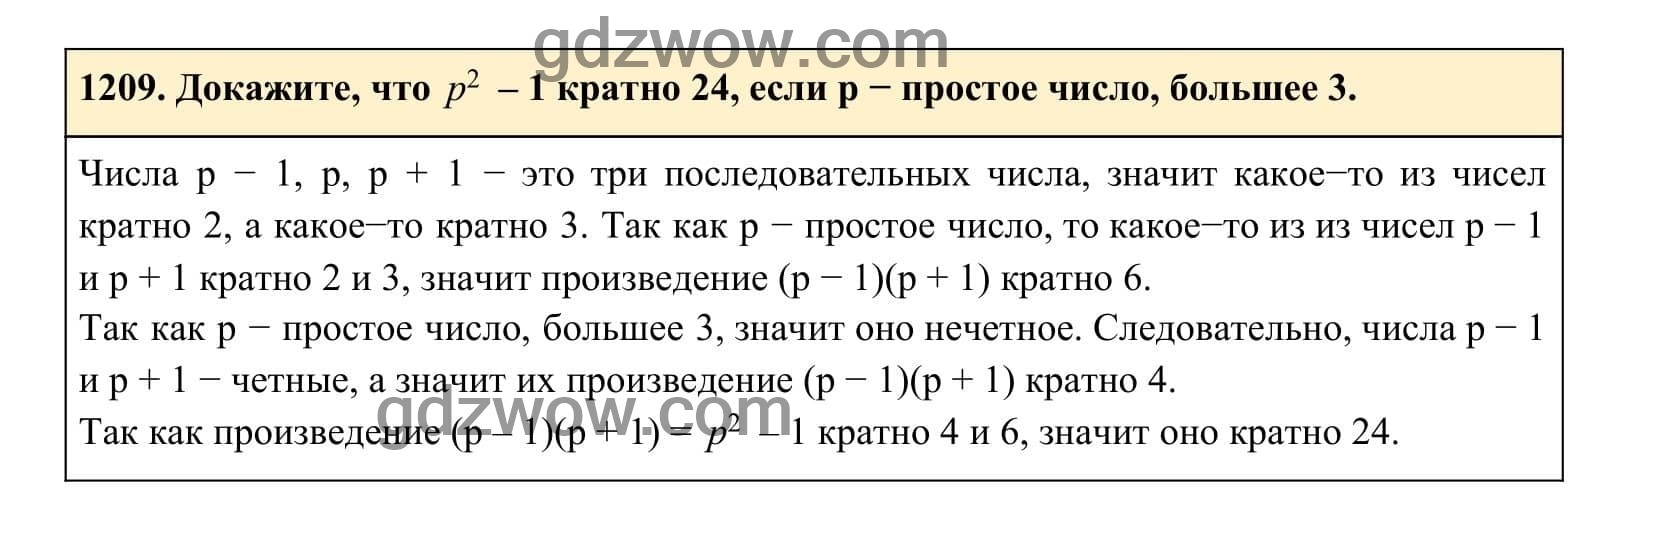 Упражнение 1209 - ГДЗ по Алгебре 7 класс Учебник Макарычев (решебник) - GDZwow